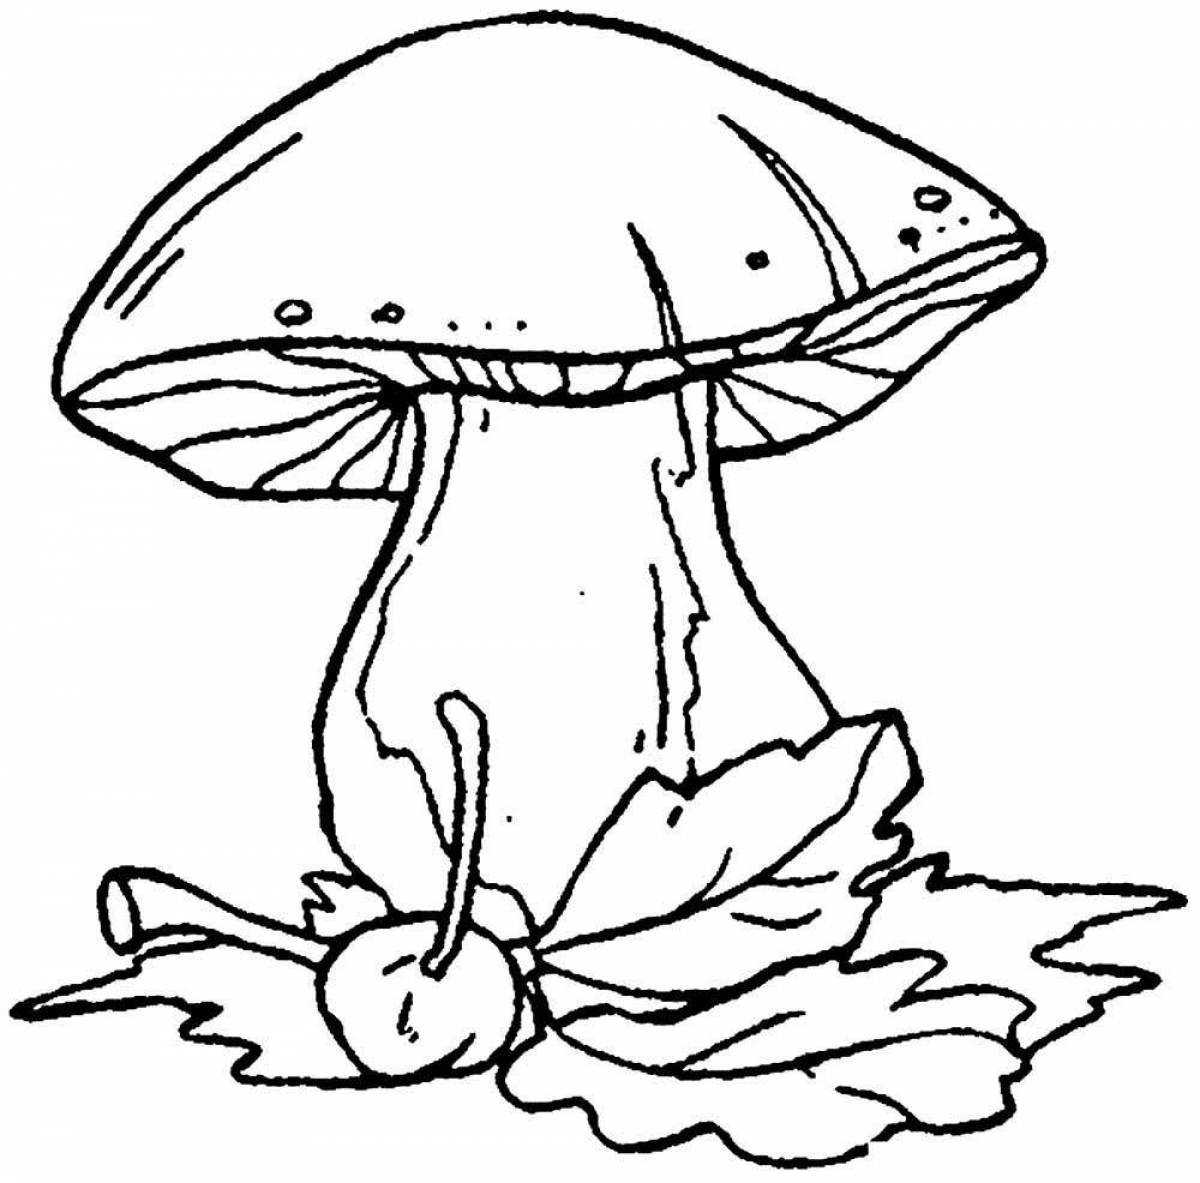 Mushroom #1